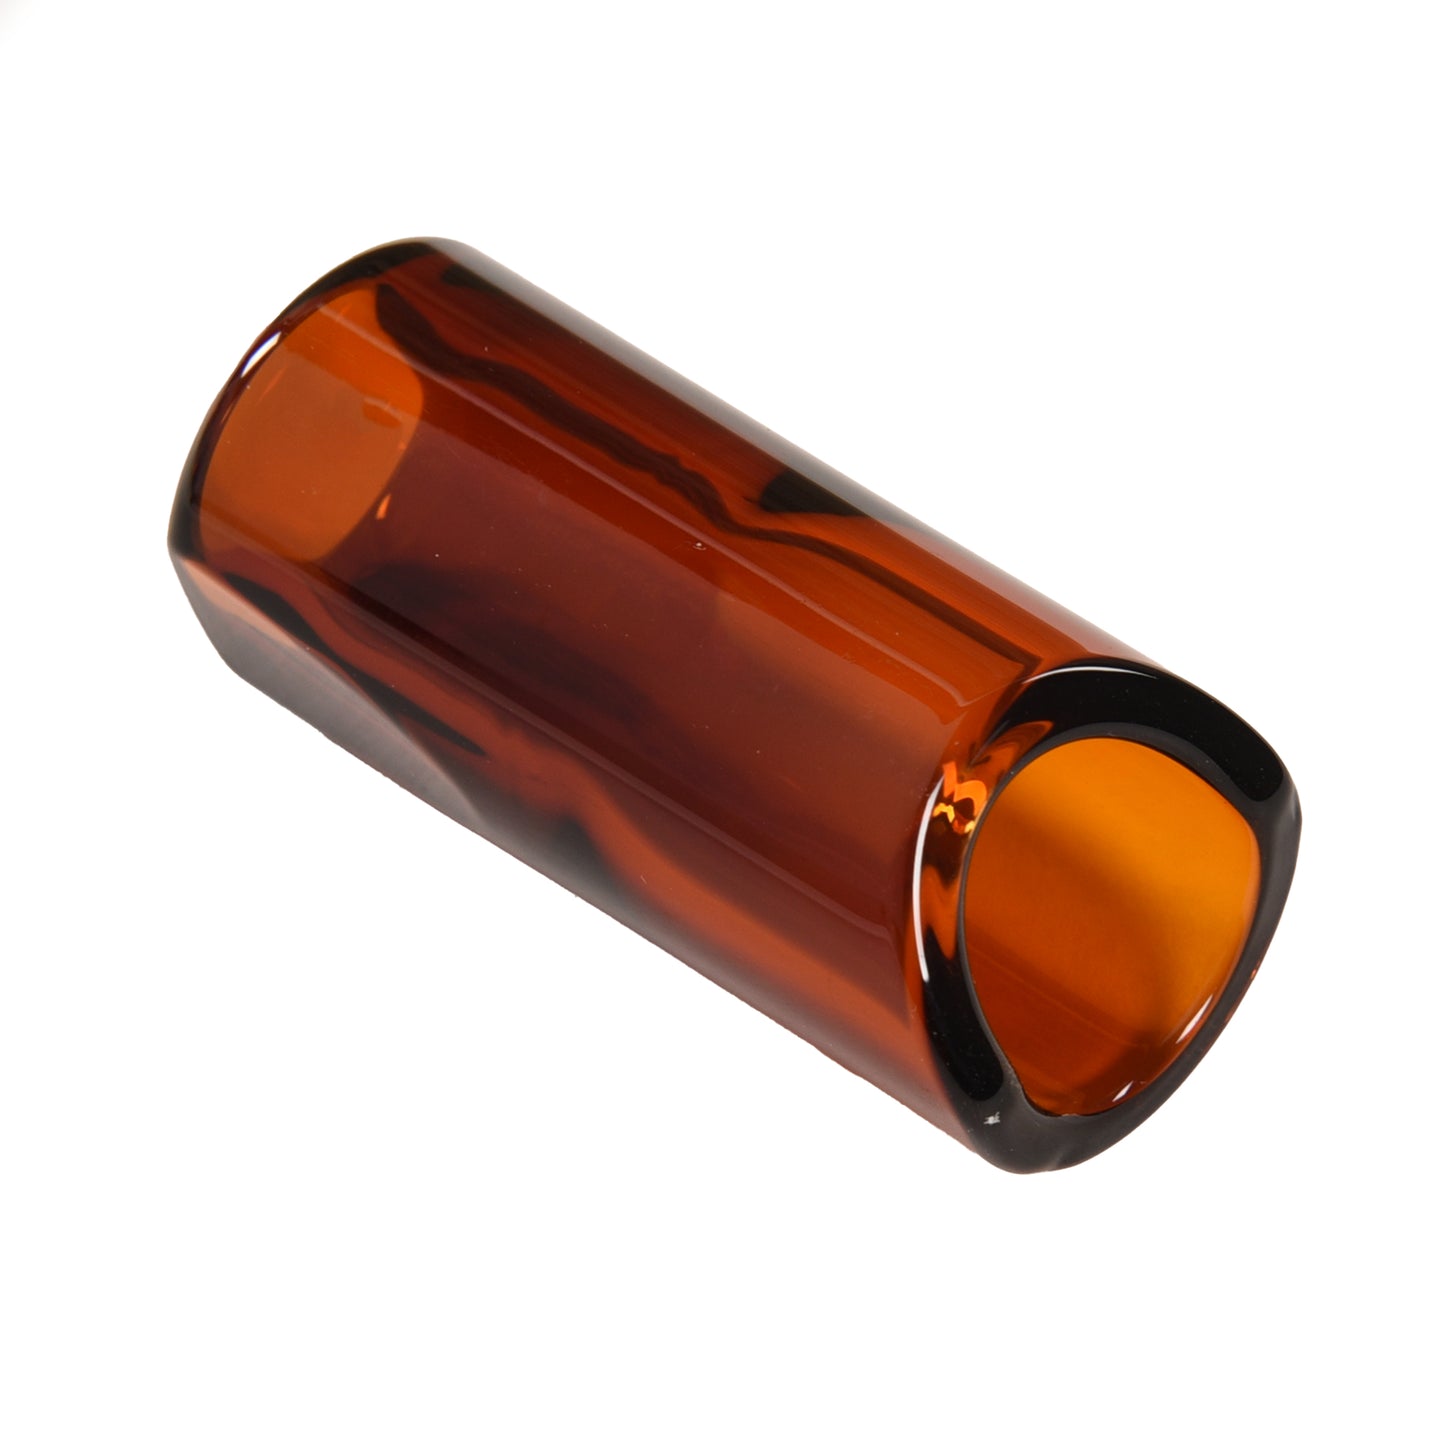 The Rock Slide Rhett Shull Signature Medium 19.5mm Internal Diameter x 60mm Length Amber Glass